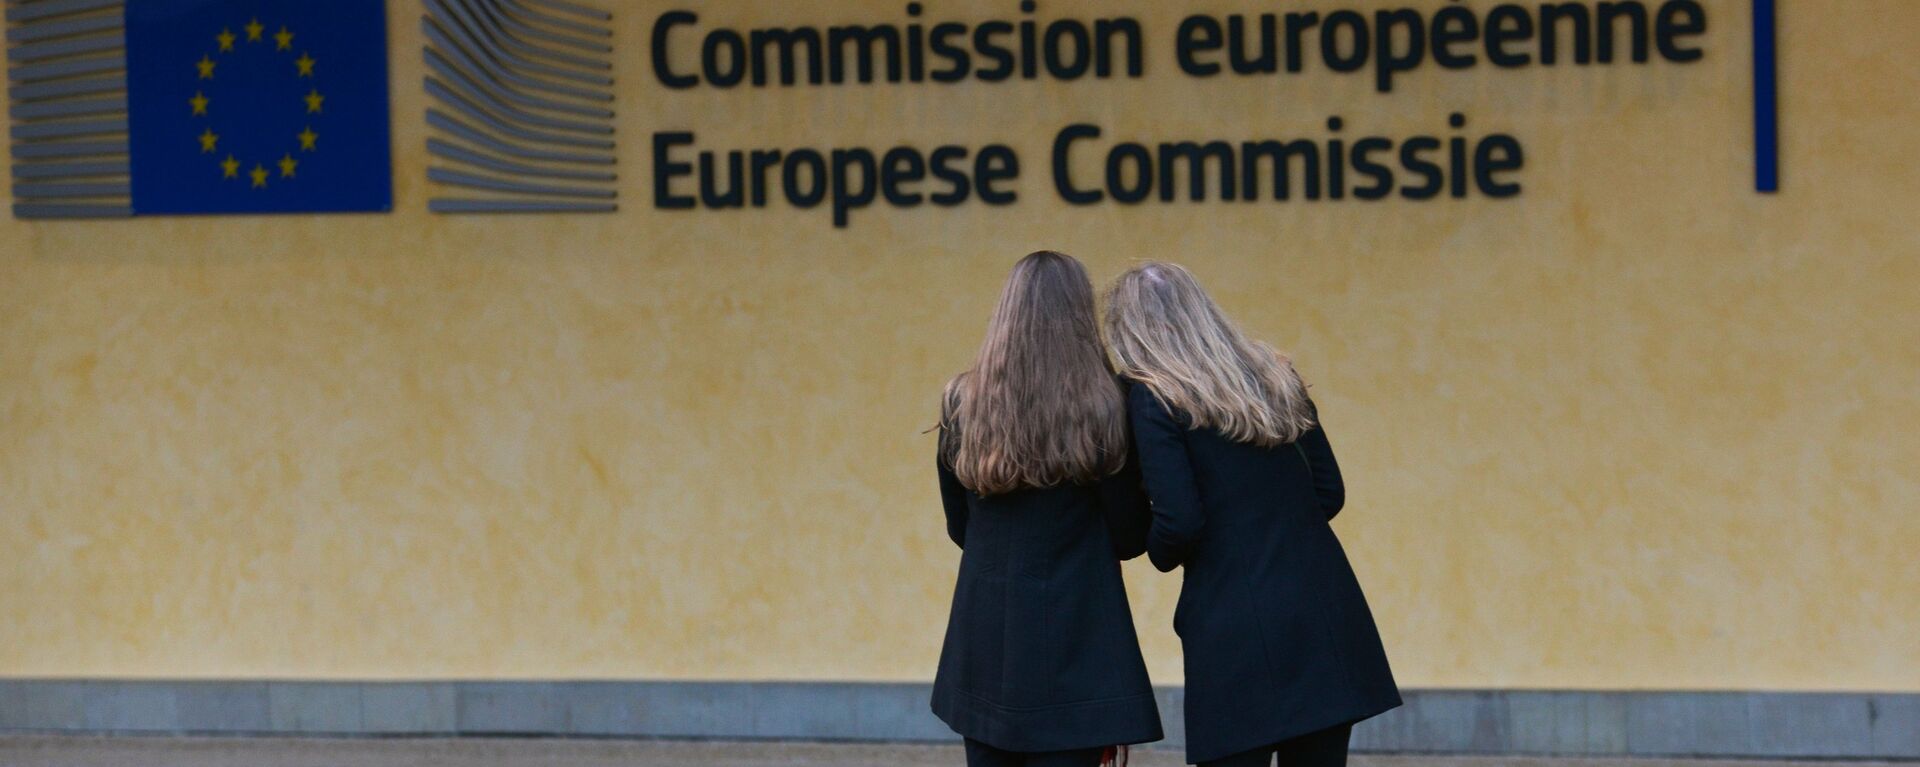 Логотип Евросоюза на здании штаб-квартиры Европейской комиссии в Брюсселе - Sputnik Латвия, 1920, 22.06.2021